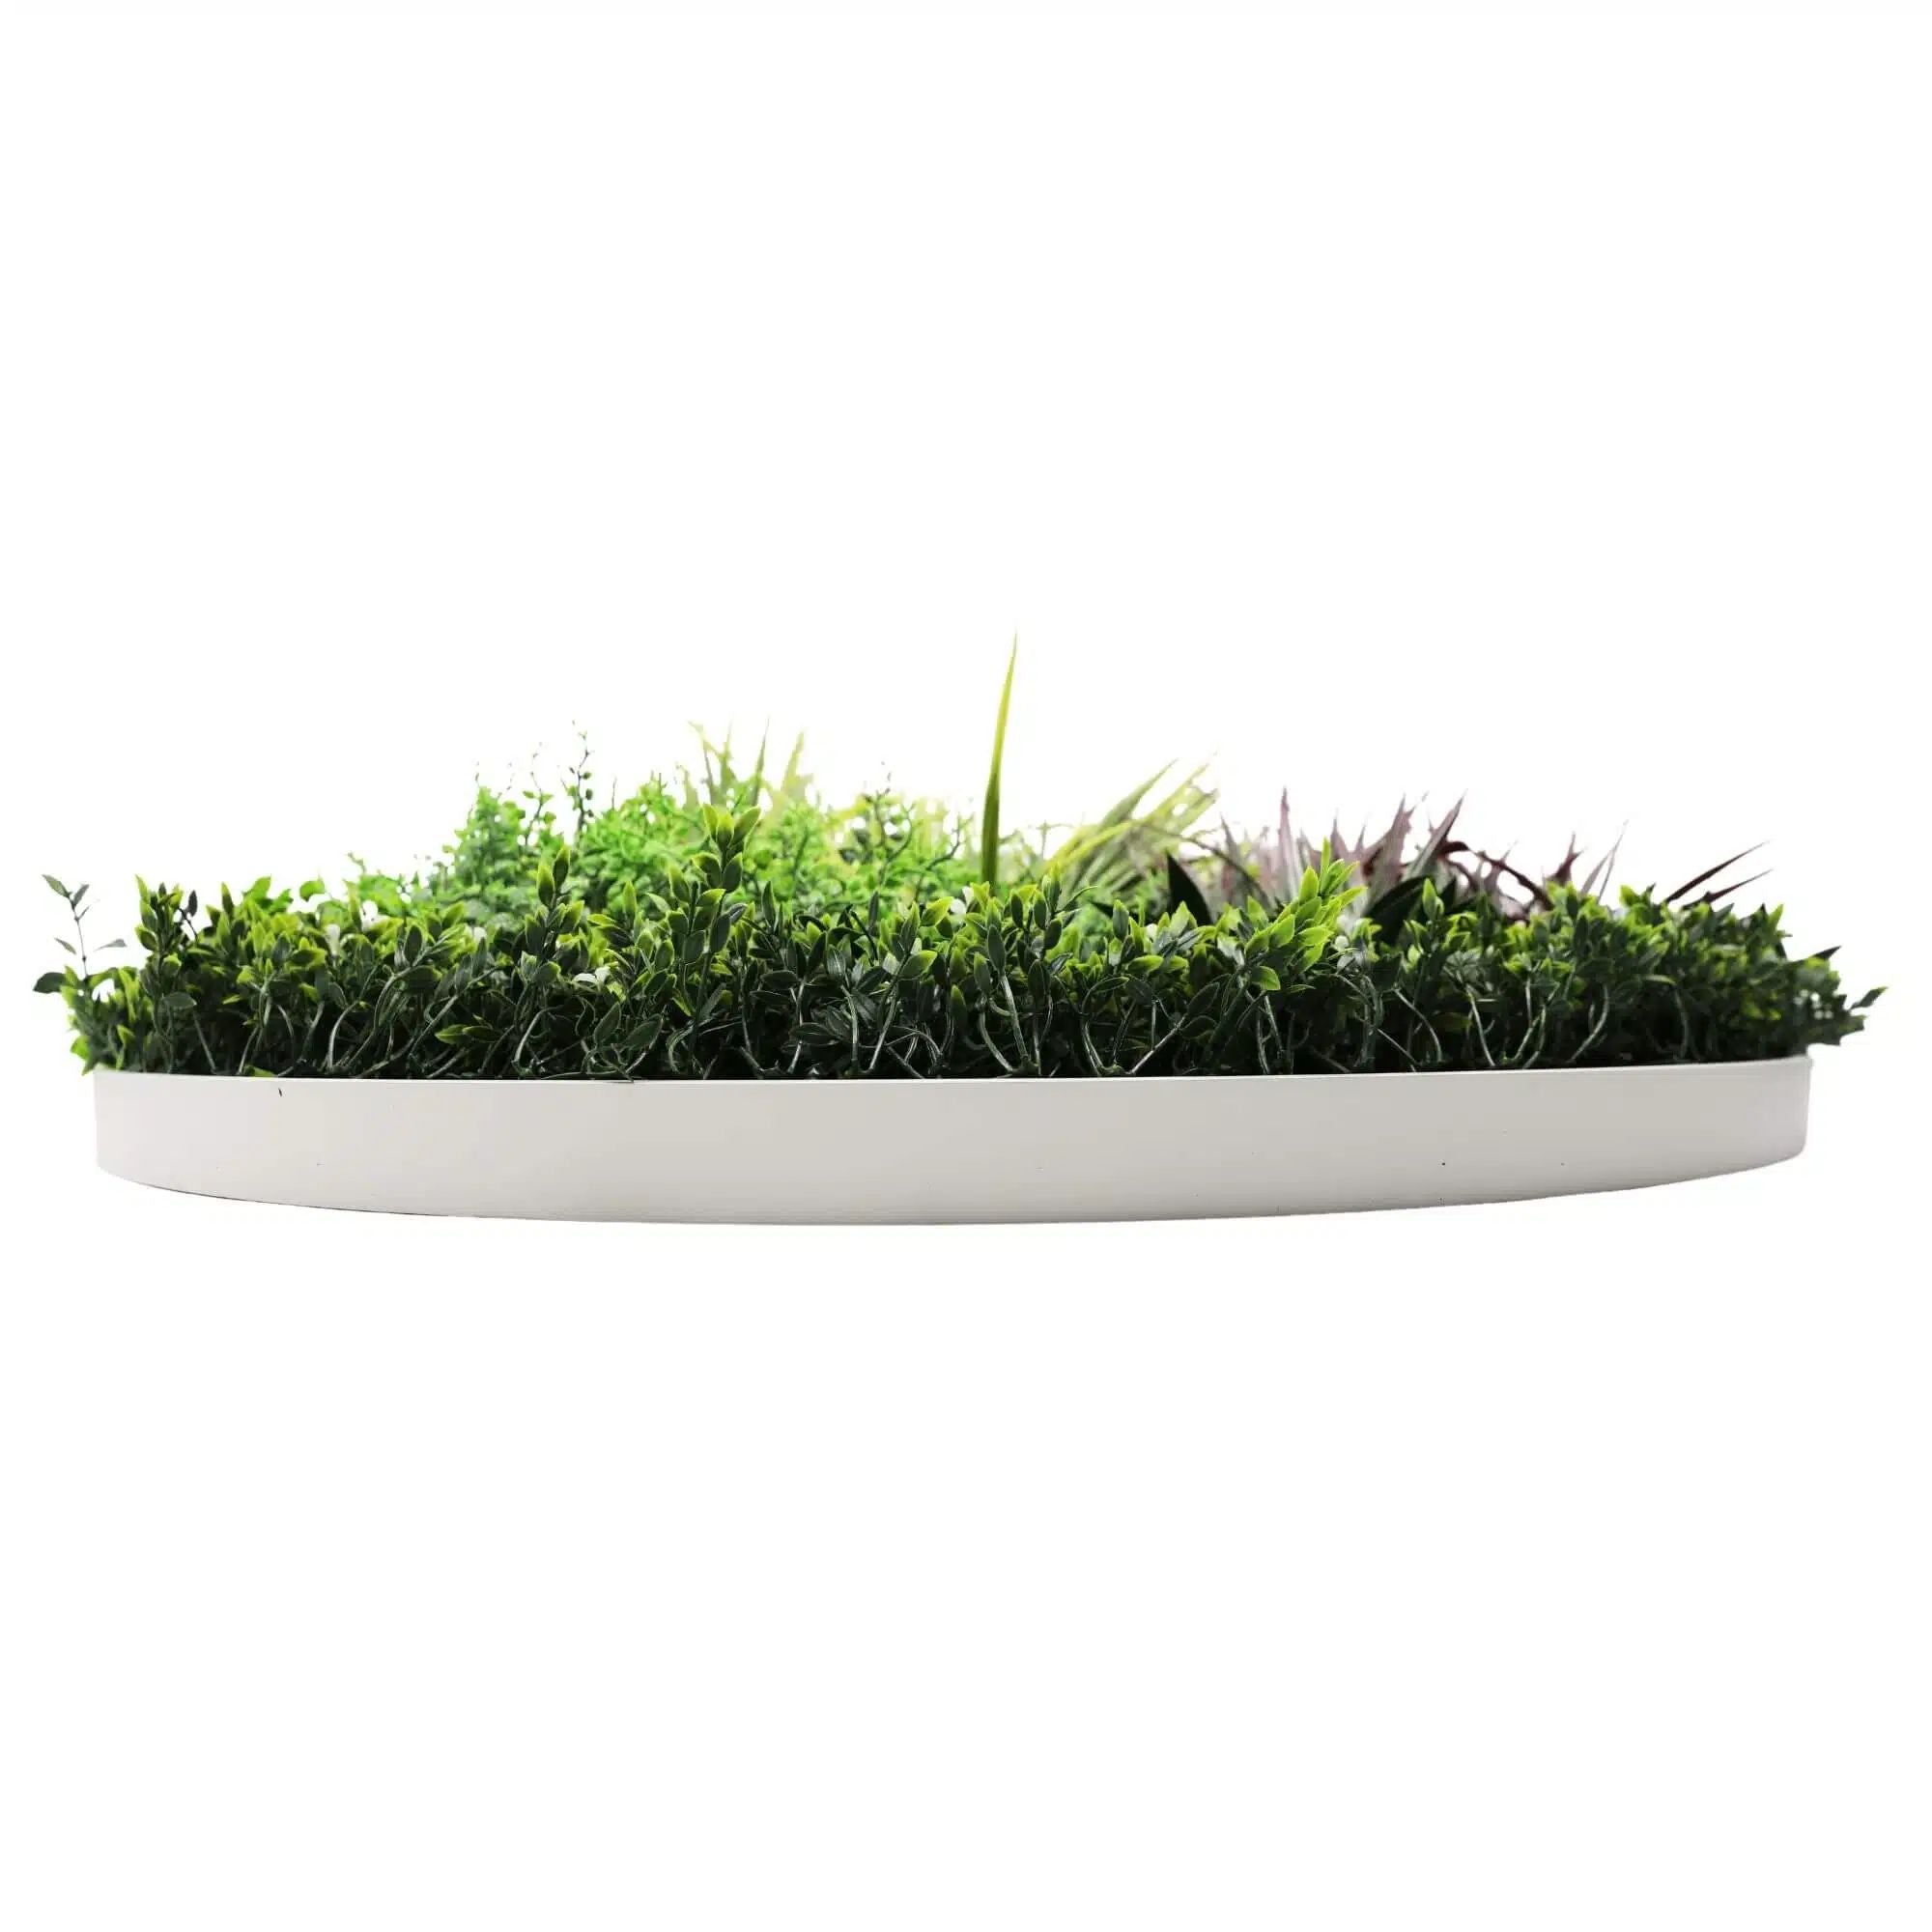 Slimline Artificial Green Wall Disc Art 100cm Grassy Fern UV Resistant (White) - Designer Vertical Gardens Artificial vertical garden wall disc